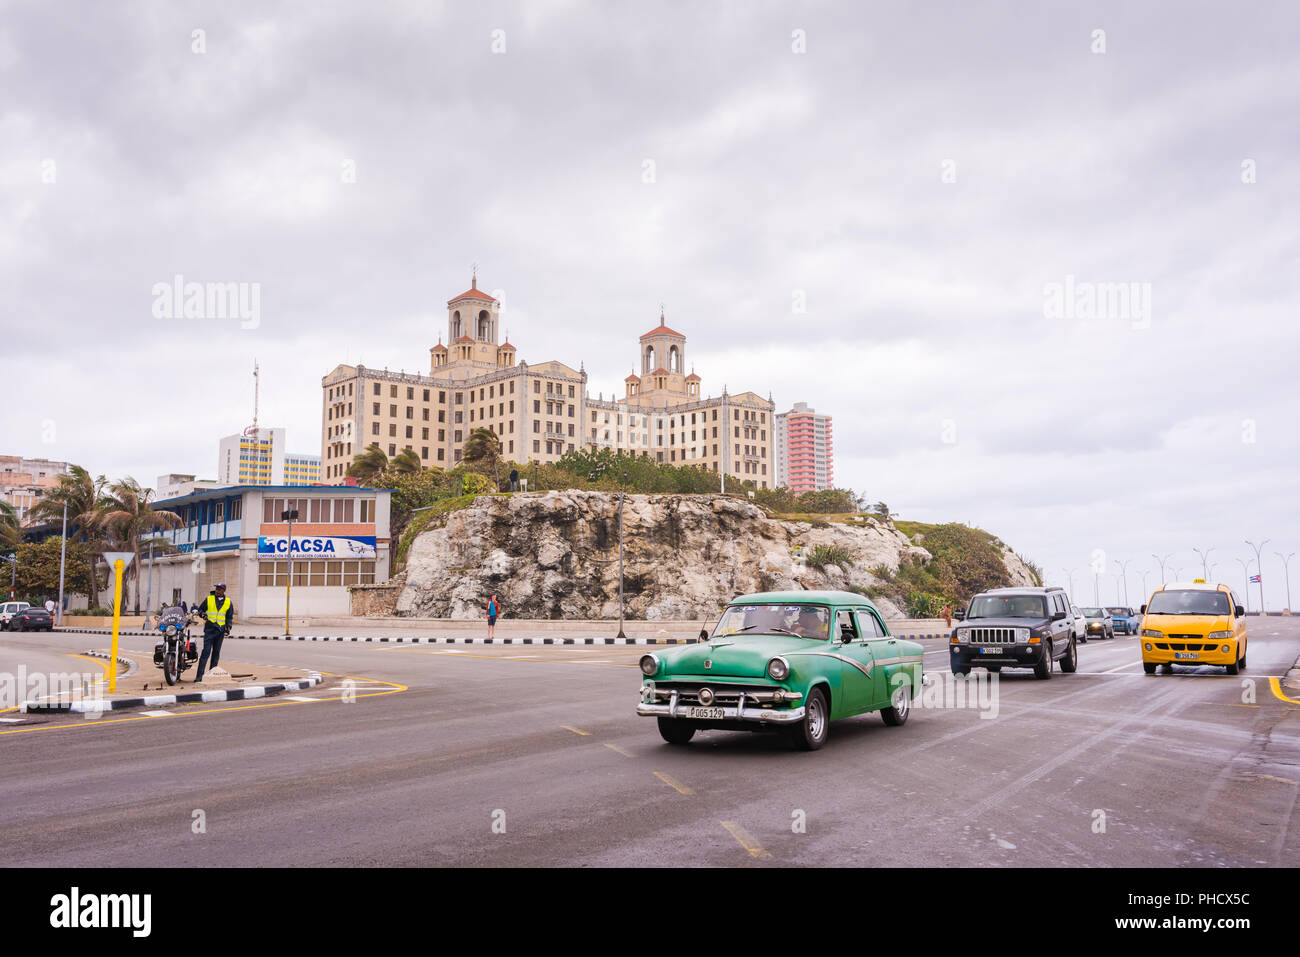 La Havane, Cuba, 21 mars 2016 / : Malecon - digue de mer - l'autoroute en face de la colline surmontée d'historique Hotel Nacional de Cuba. Banque D'Images